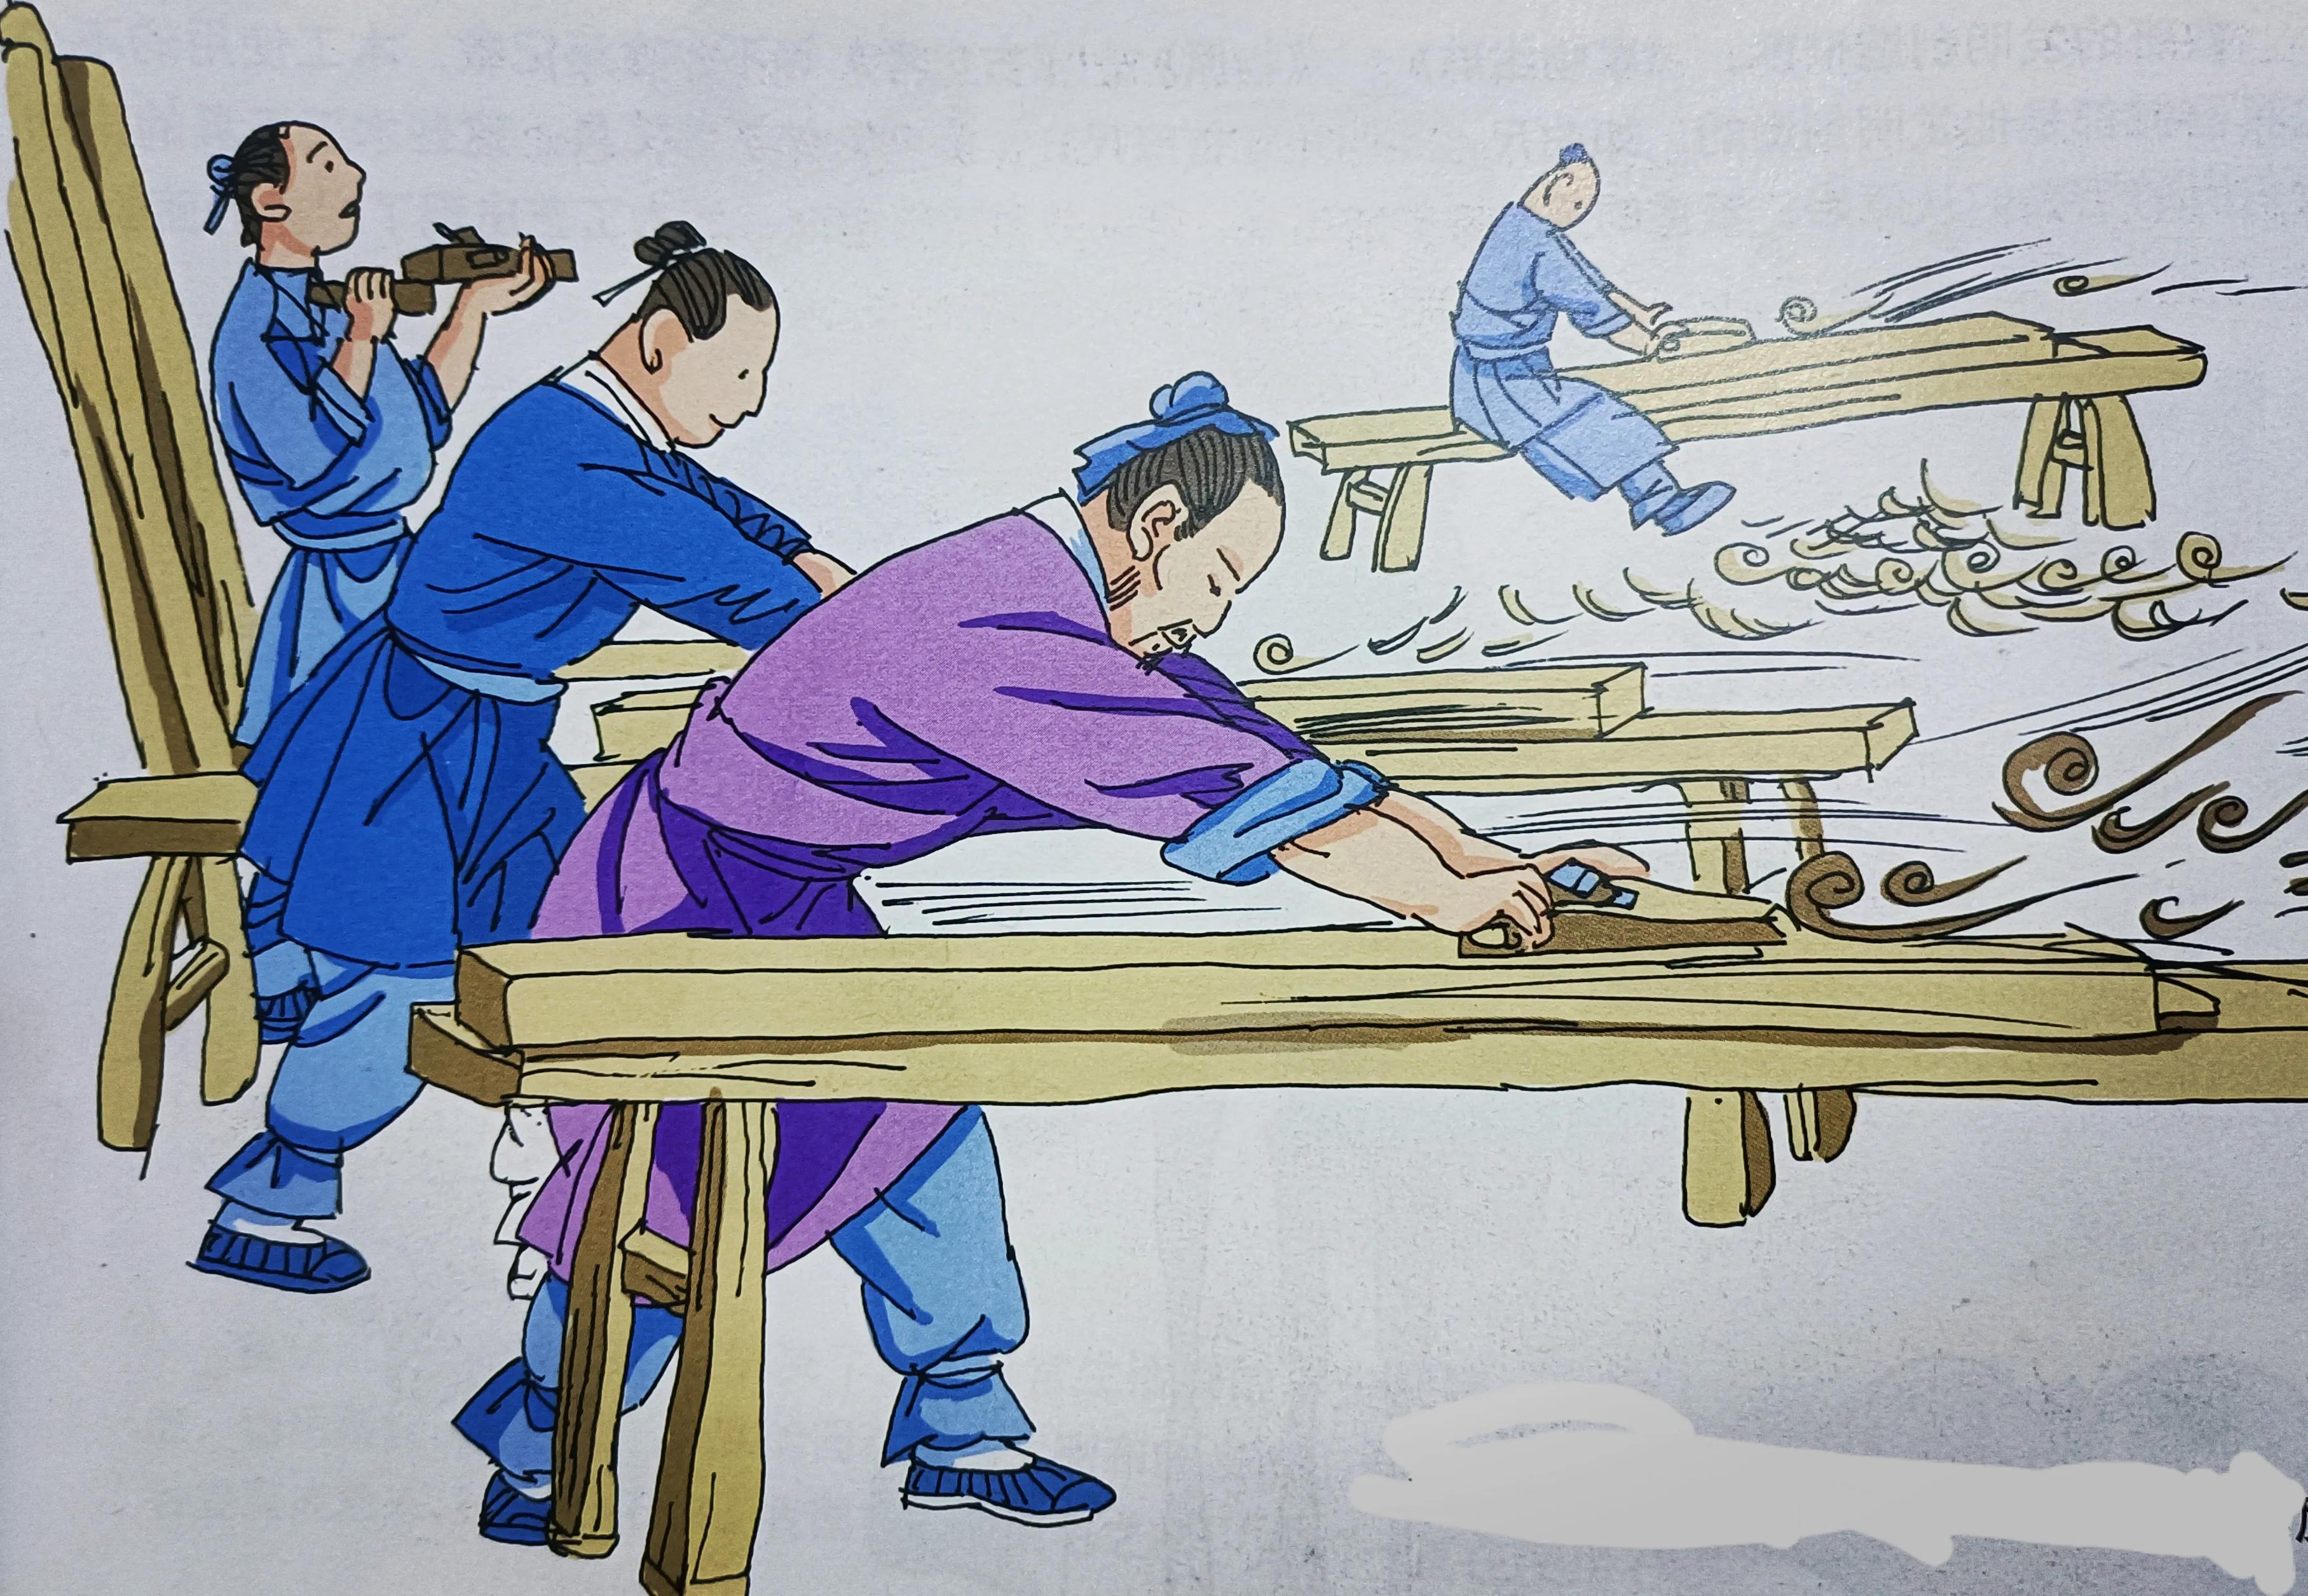 影响世界的中国科技成就:锯,刨和他们的发明者鲁班